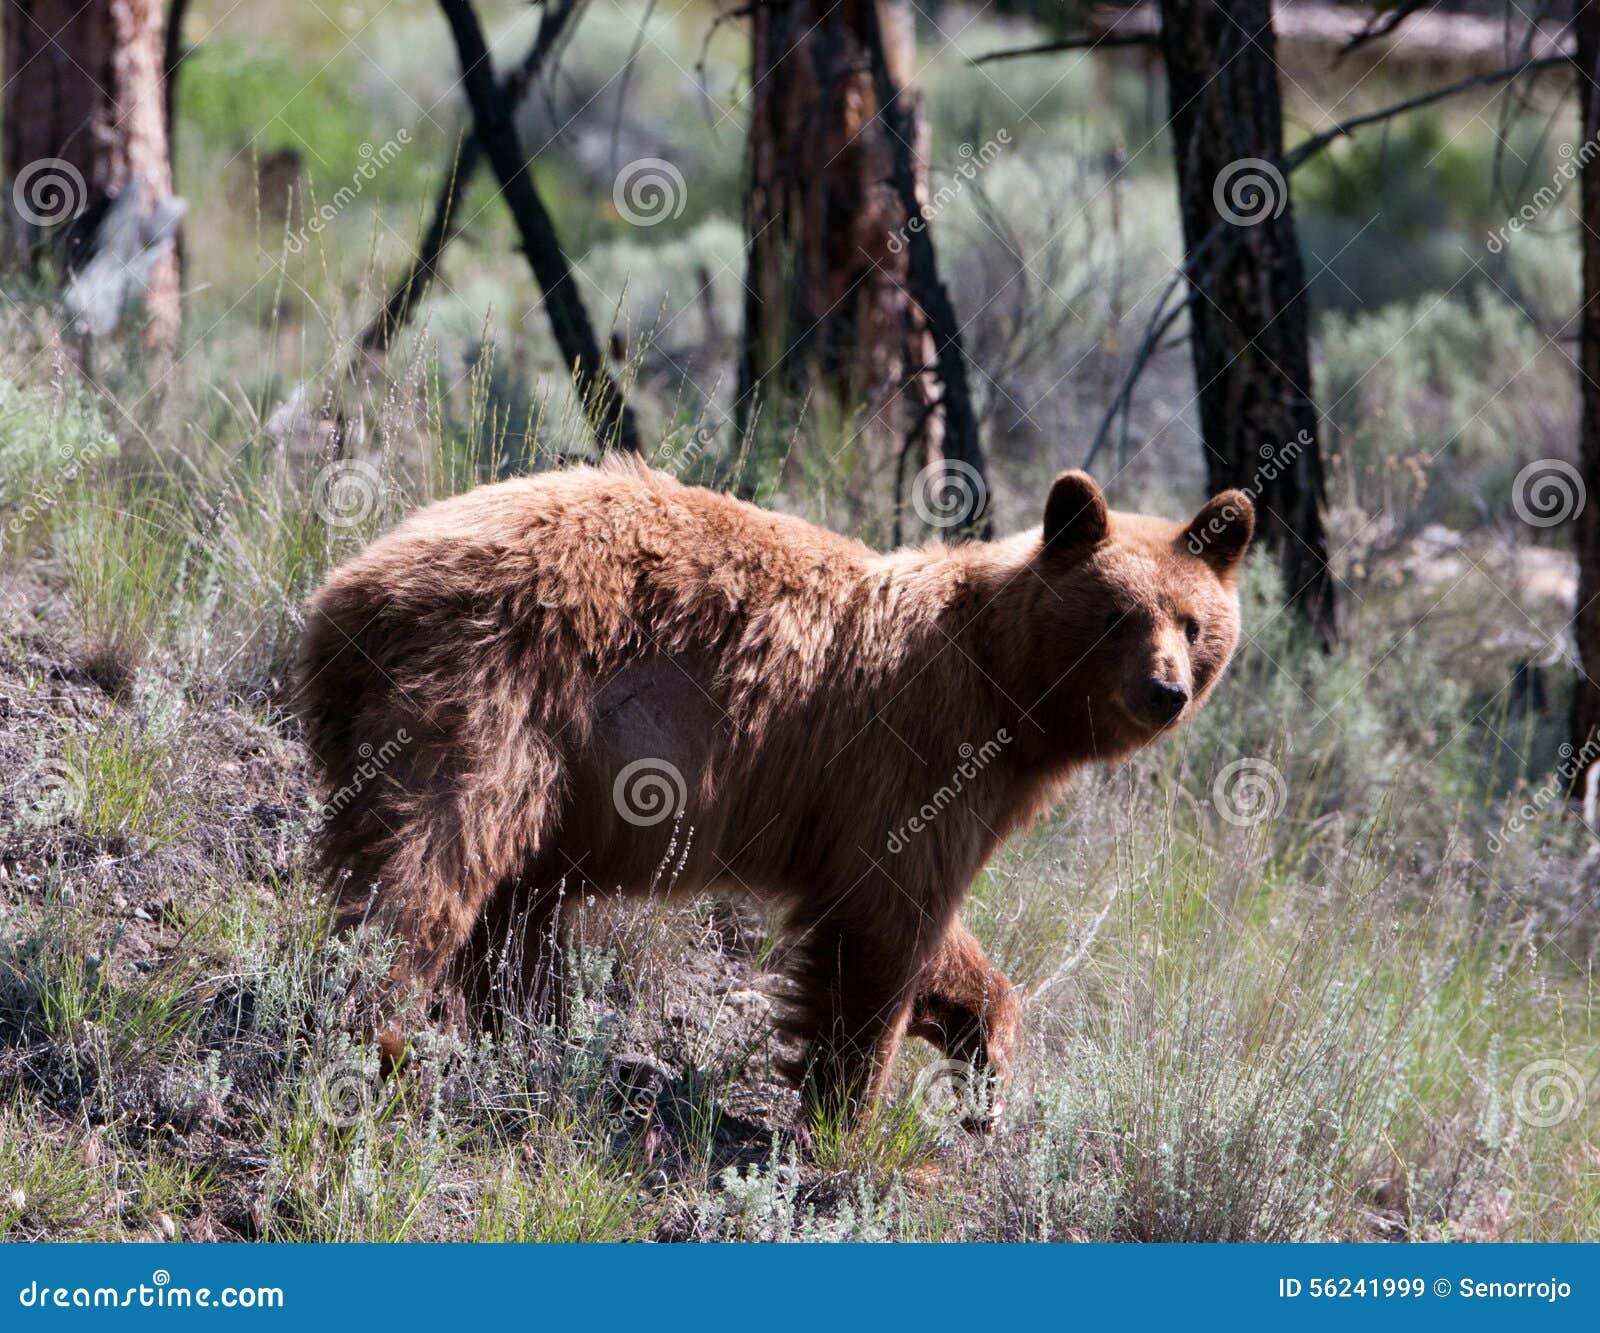 Cuando está asustado un oso negro subirá a menudo un árbol, incluso pequeño Los osos negros son a menudo marrones o aún rubios en color